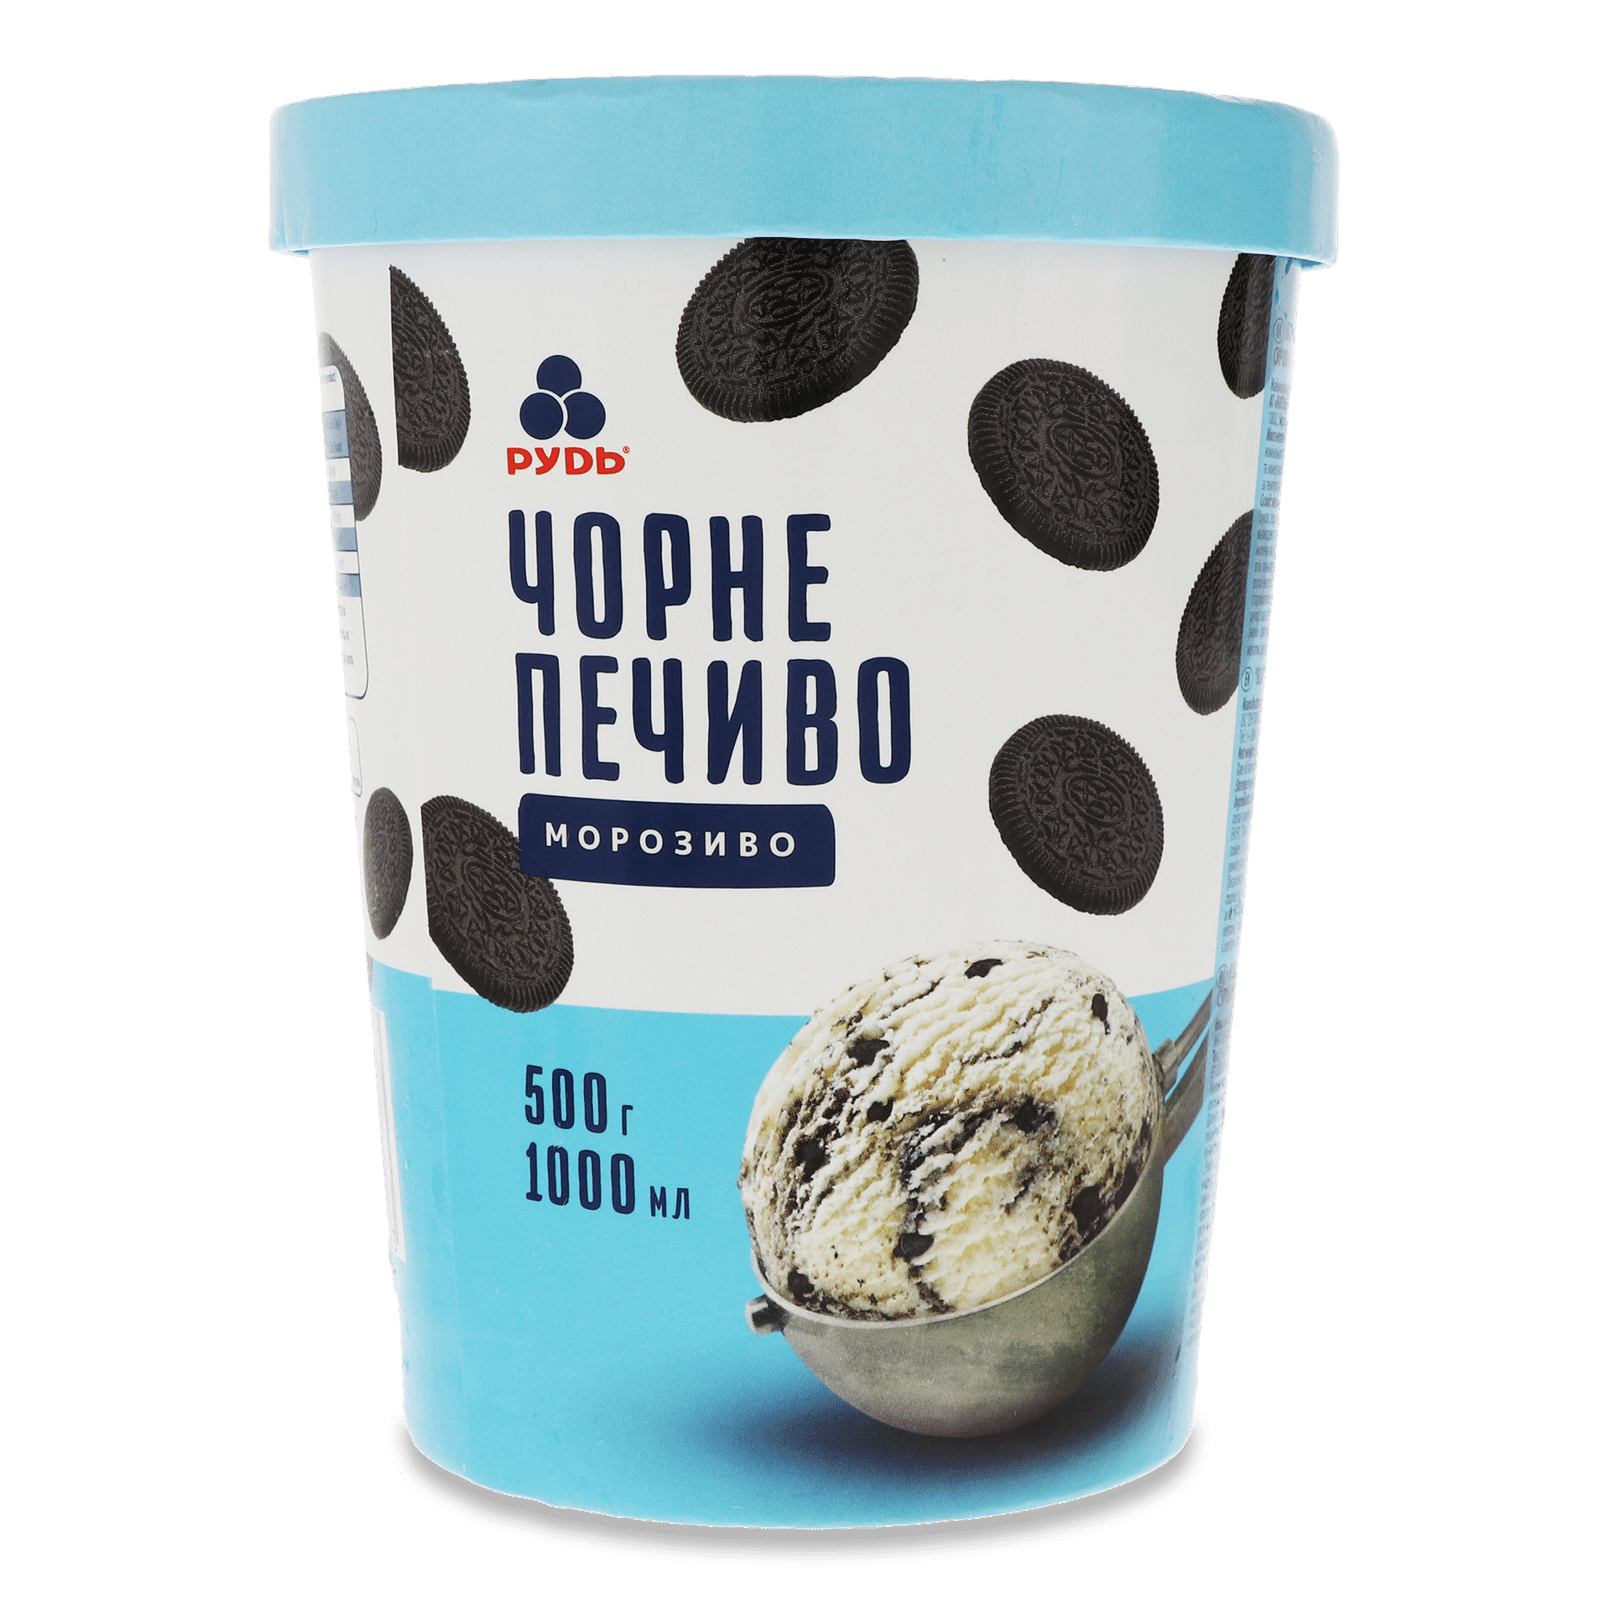 Морозиво «Рудь» «Чорне печиво» - 1